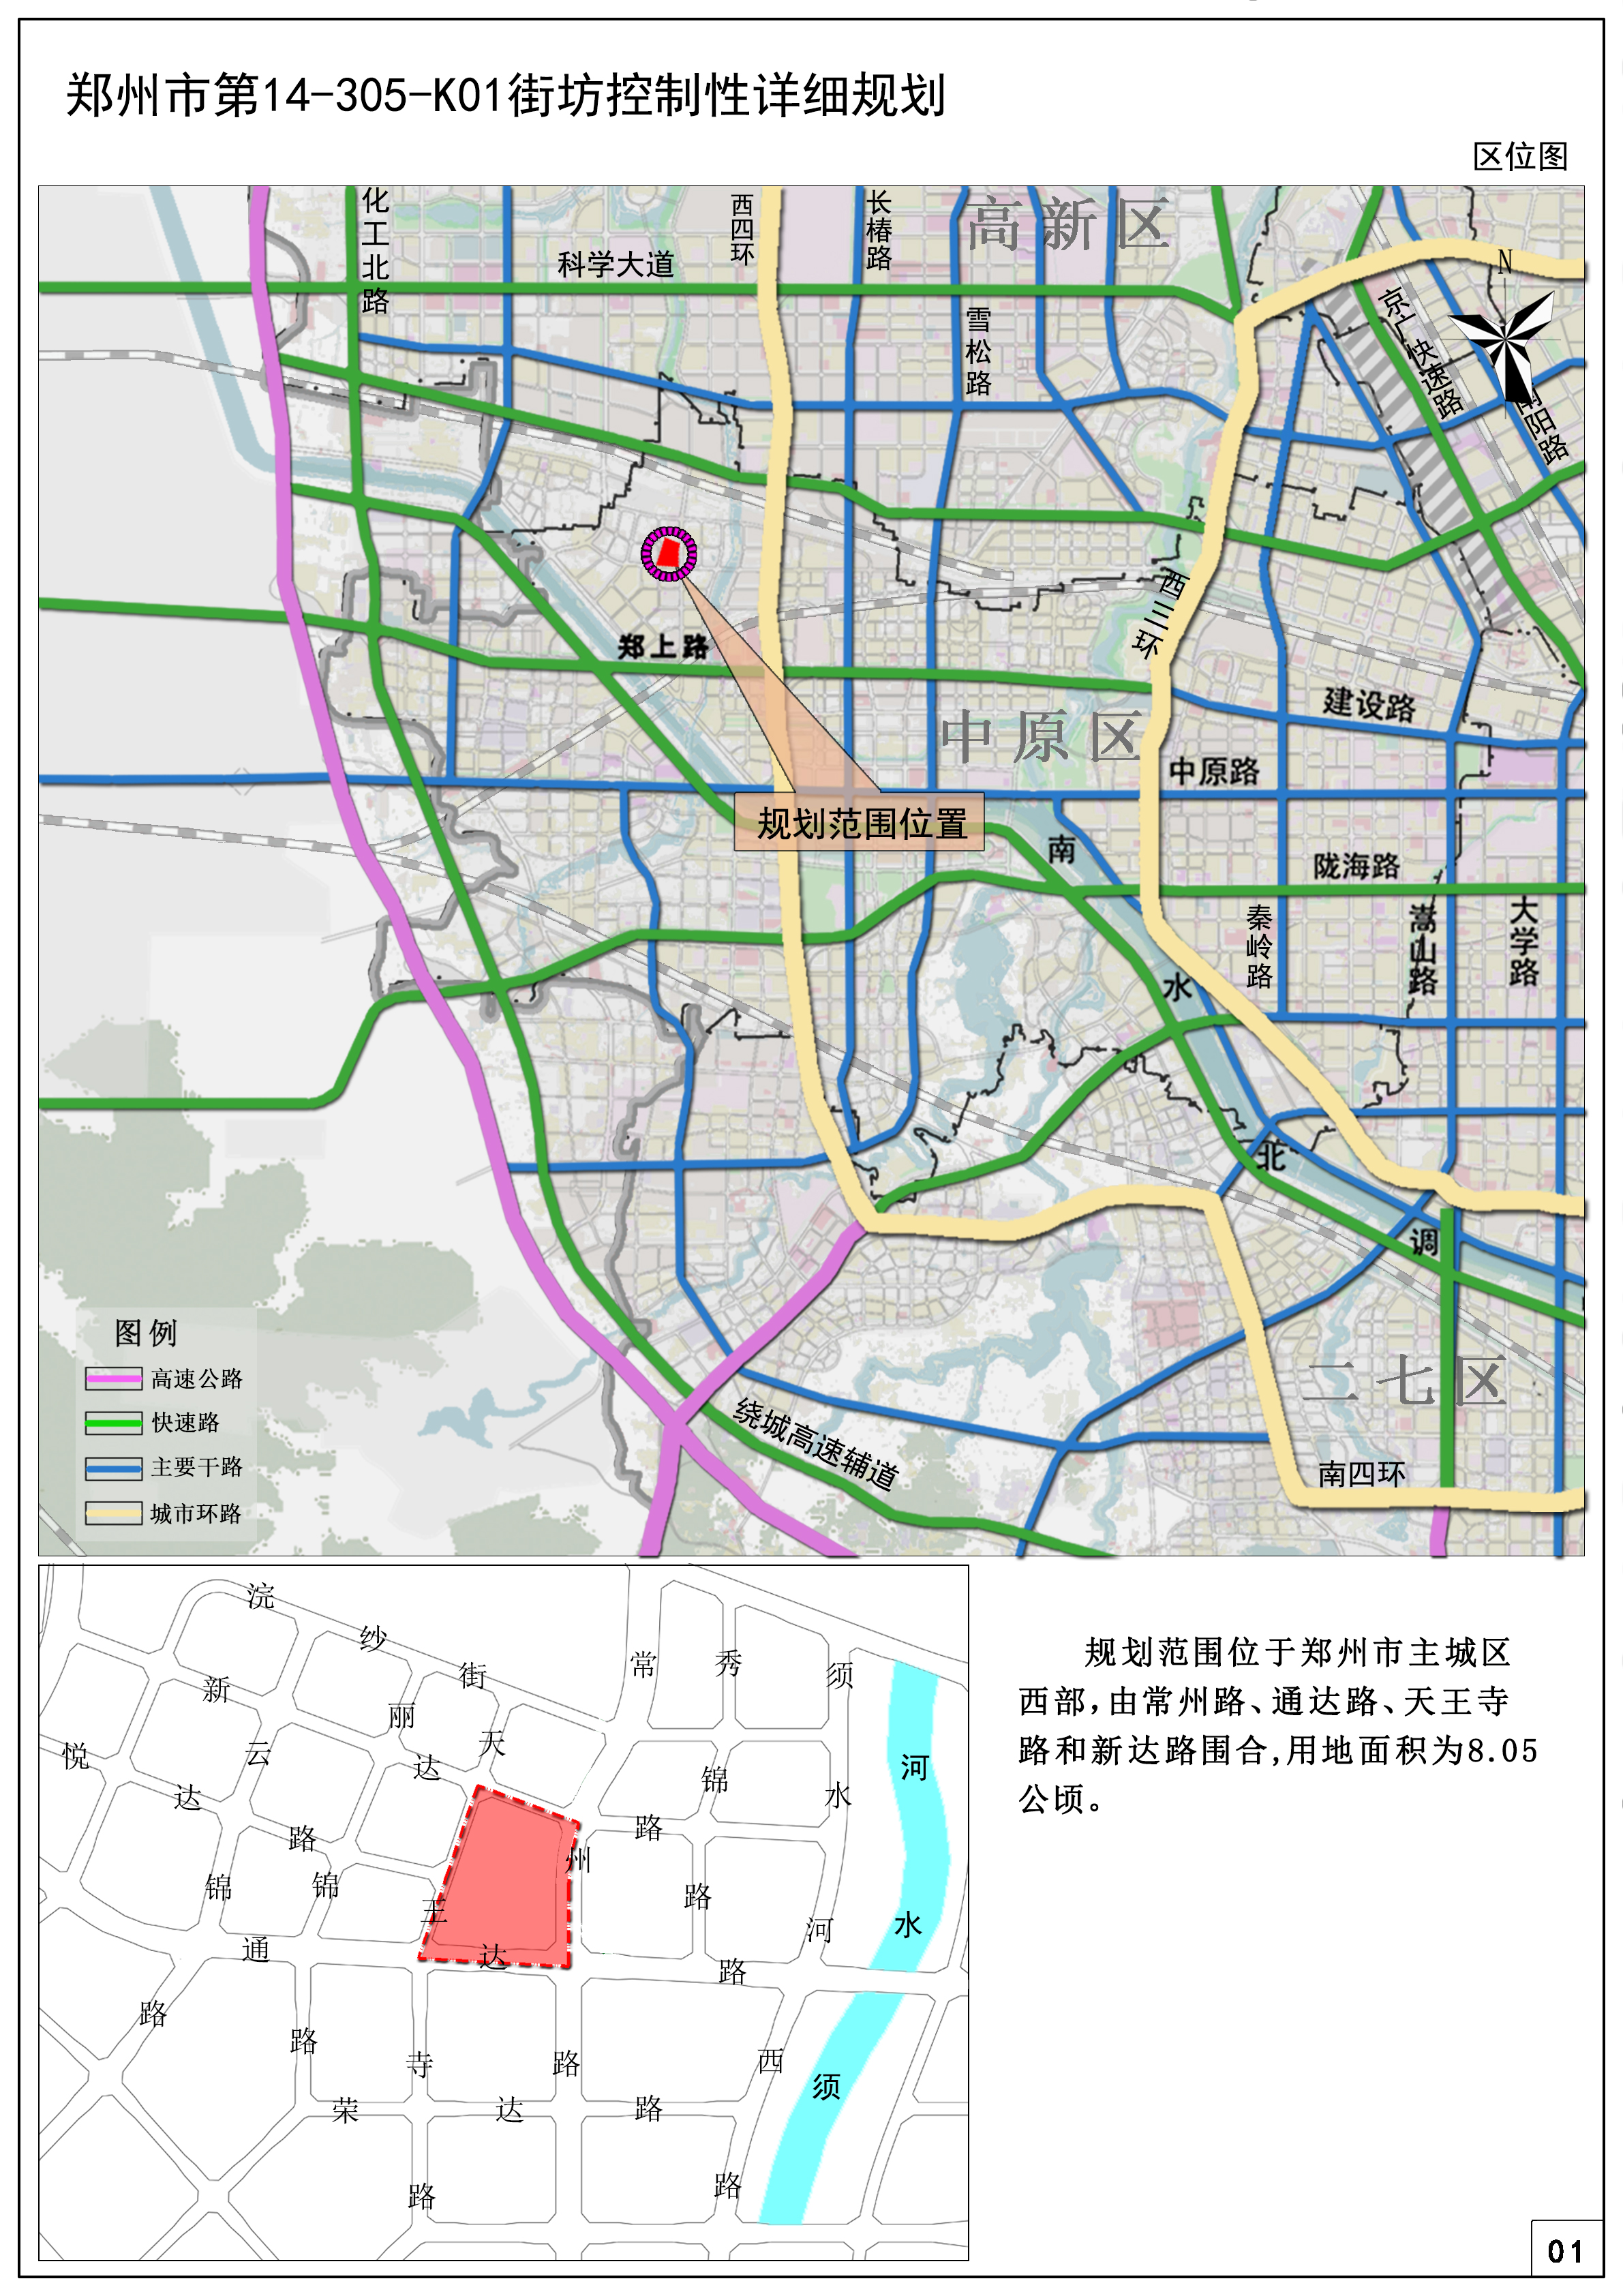 郑州市第14-305-K01街坊控制性详细规划